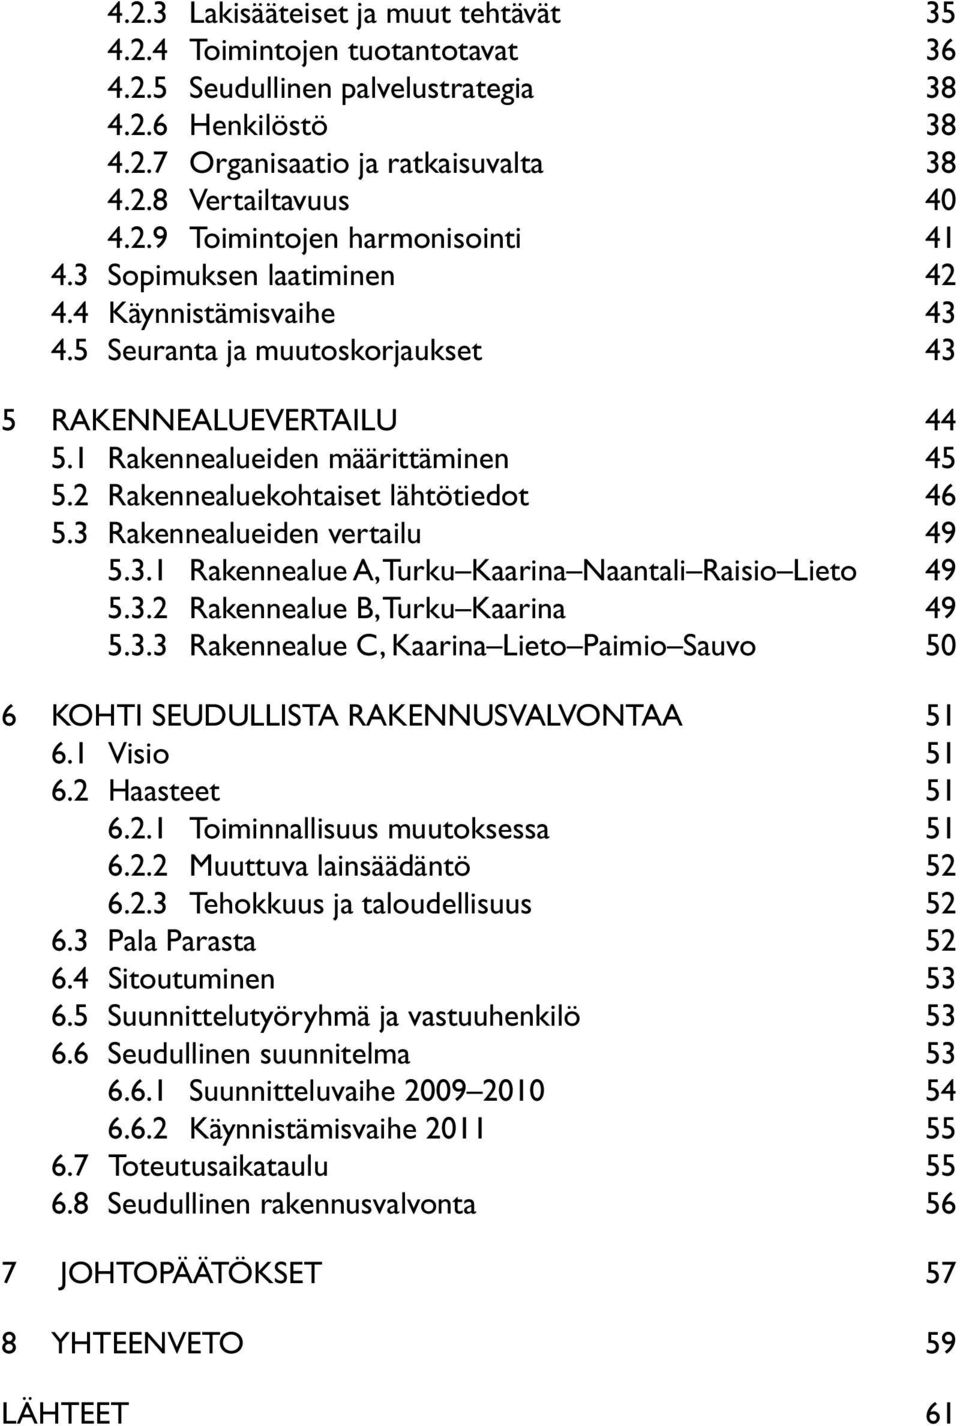 3 Rakennealueiden vertailu 49 5.3.1 Rakennealue A, Turku Kaarina Naantali Raisio Lieto 49 5.3.2 Rakennealue B, Turku Kaarina 49 5.3.3 Rakennealue C, Kaarina Lieto Paimio Sauvo 50 6 KOHTI SEUDULLISTA RAKENNUSVALVONTAA 51 6.